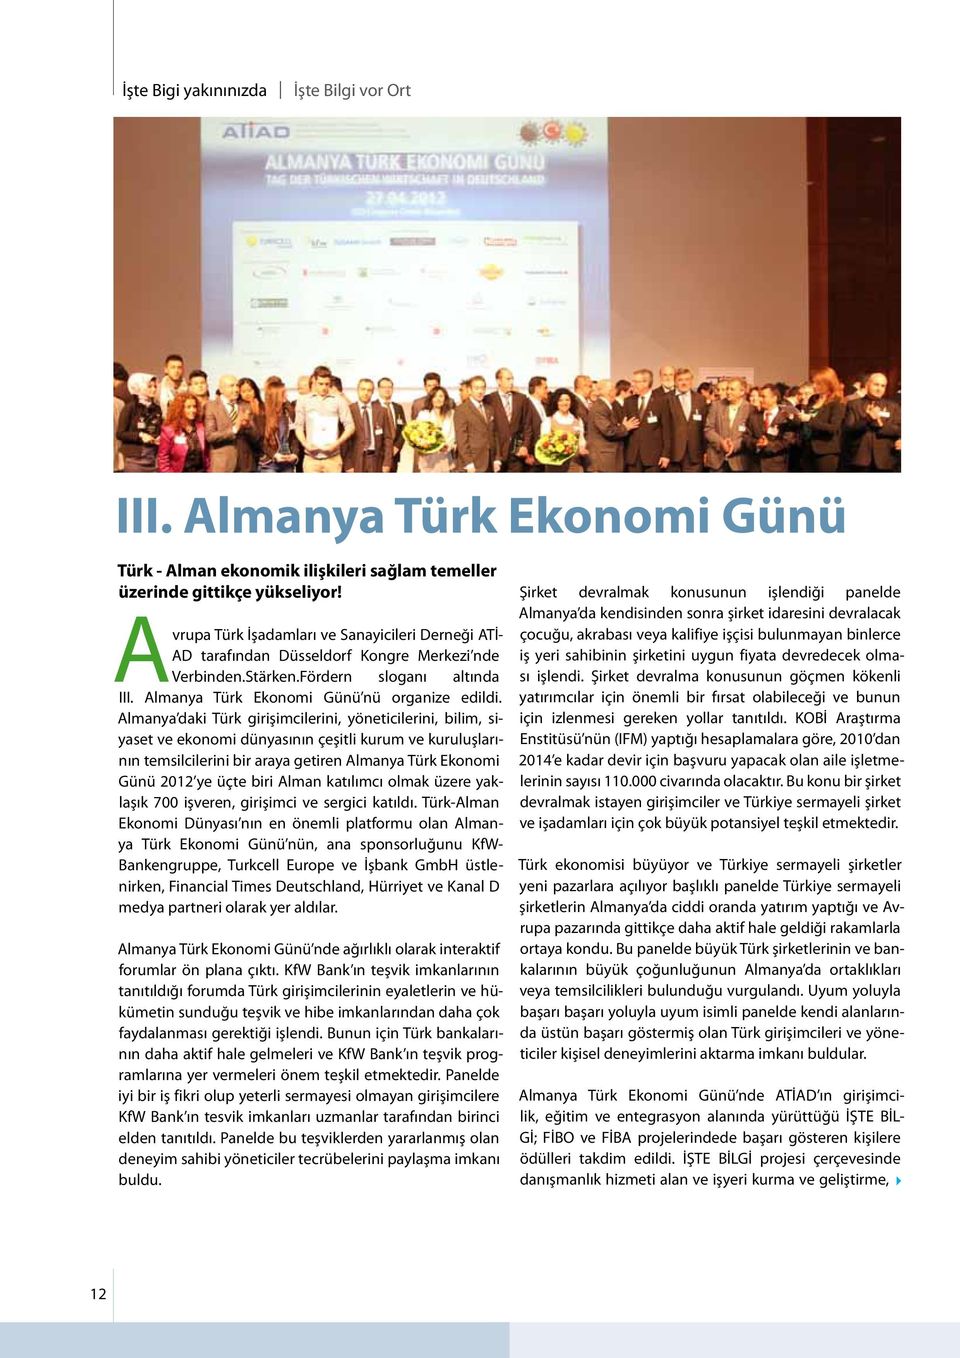 Almanya daki Türk girişimcilerini, yöneticilerini, bilim, siyaset ve ekonomi dünyasının çeşitli kurum ve kuruluşlarının temsilcilerini bir araya getiren Almanya Türk Ekonomi Günü 2012 ye üçte biri